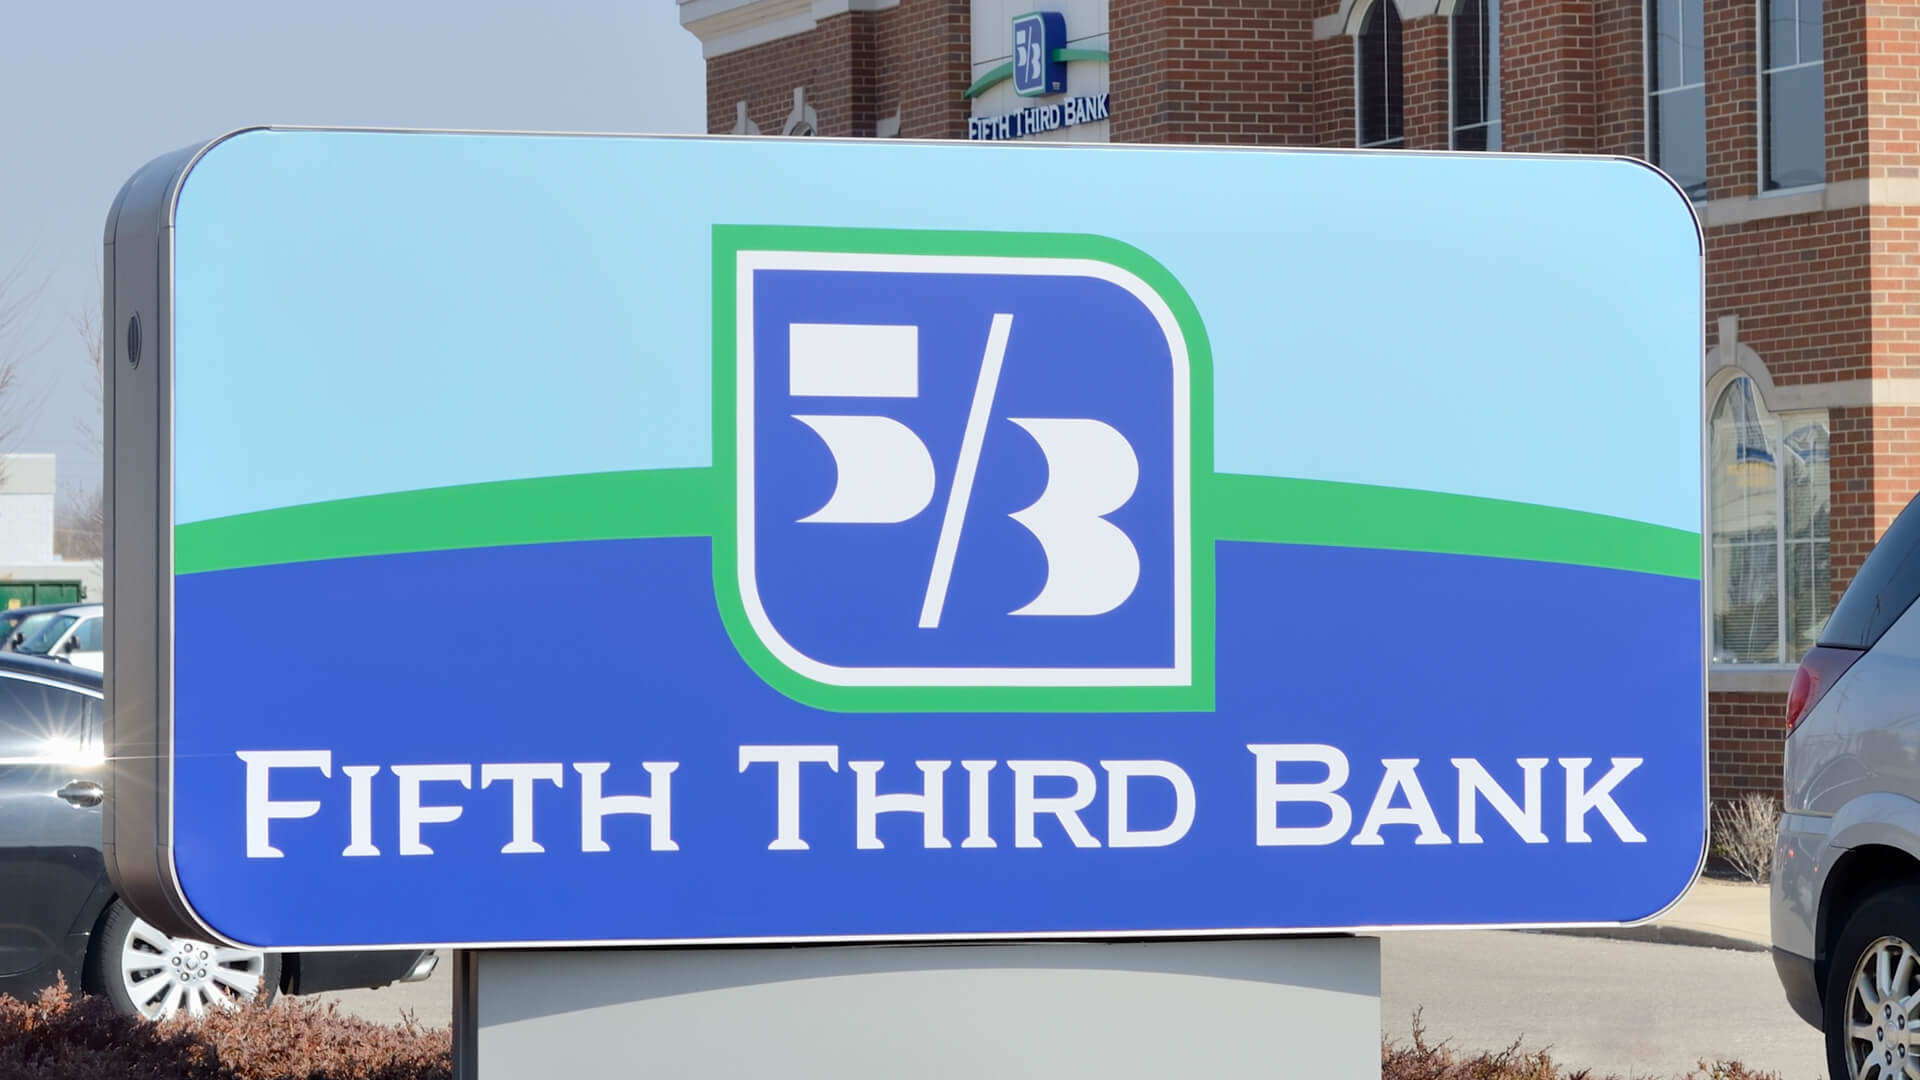 Er femte tredje en god bank?